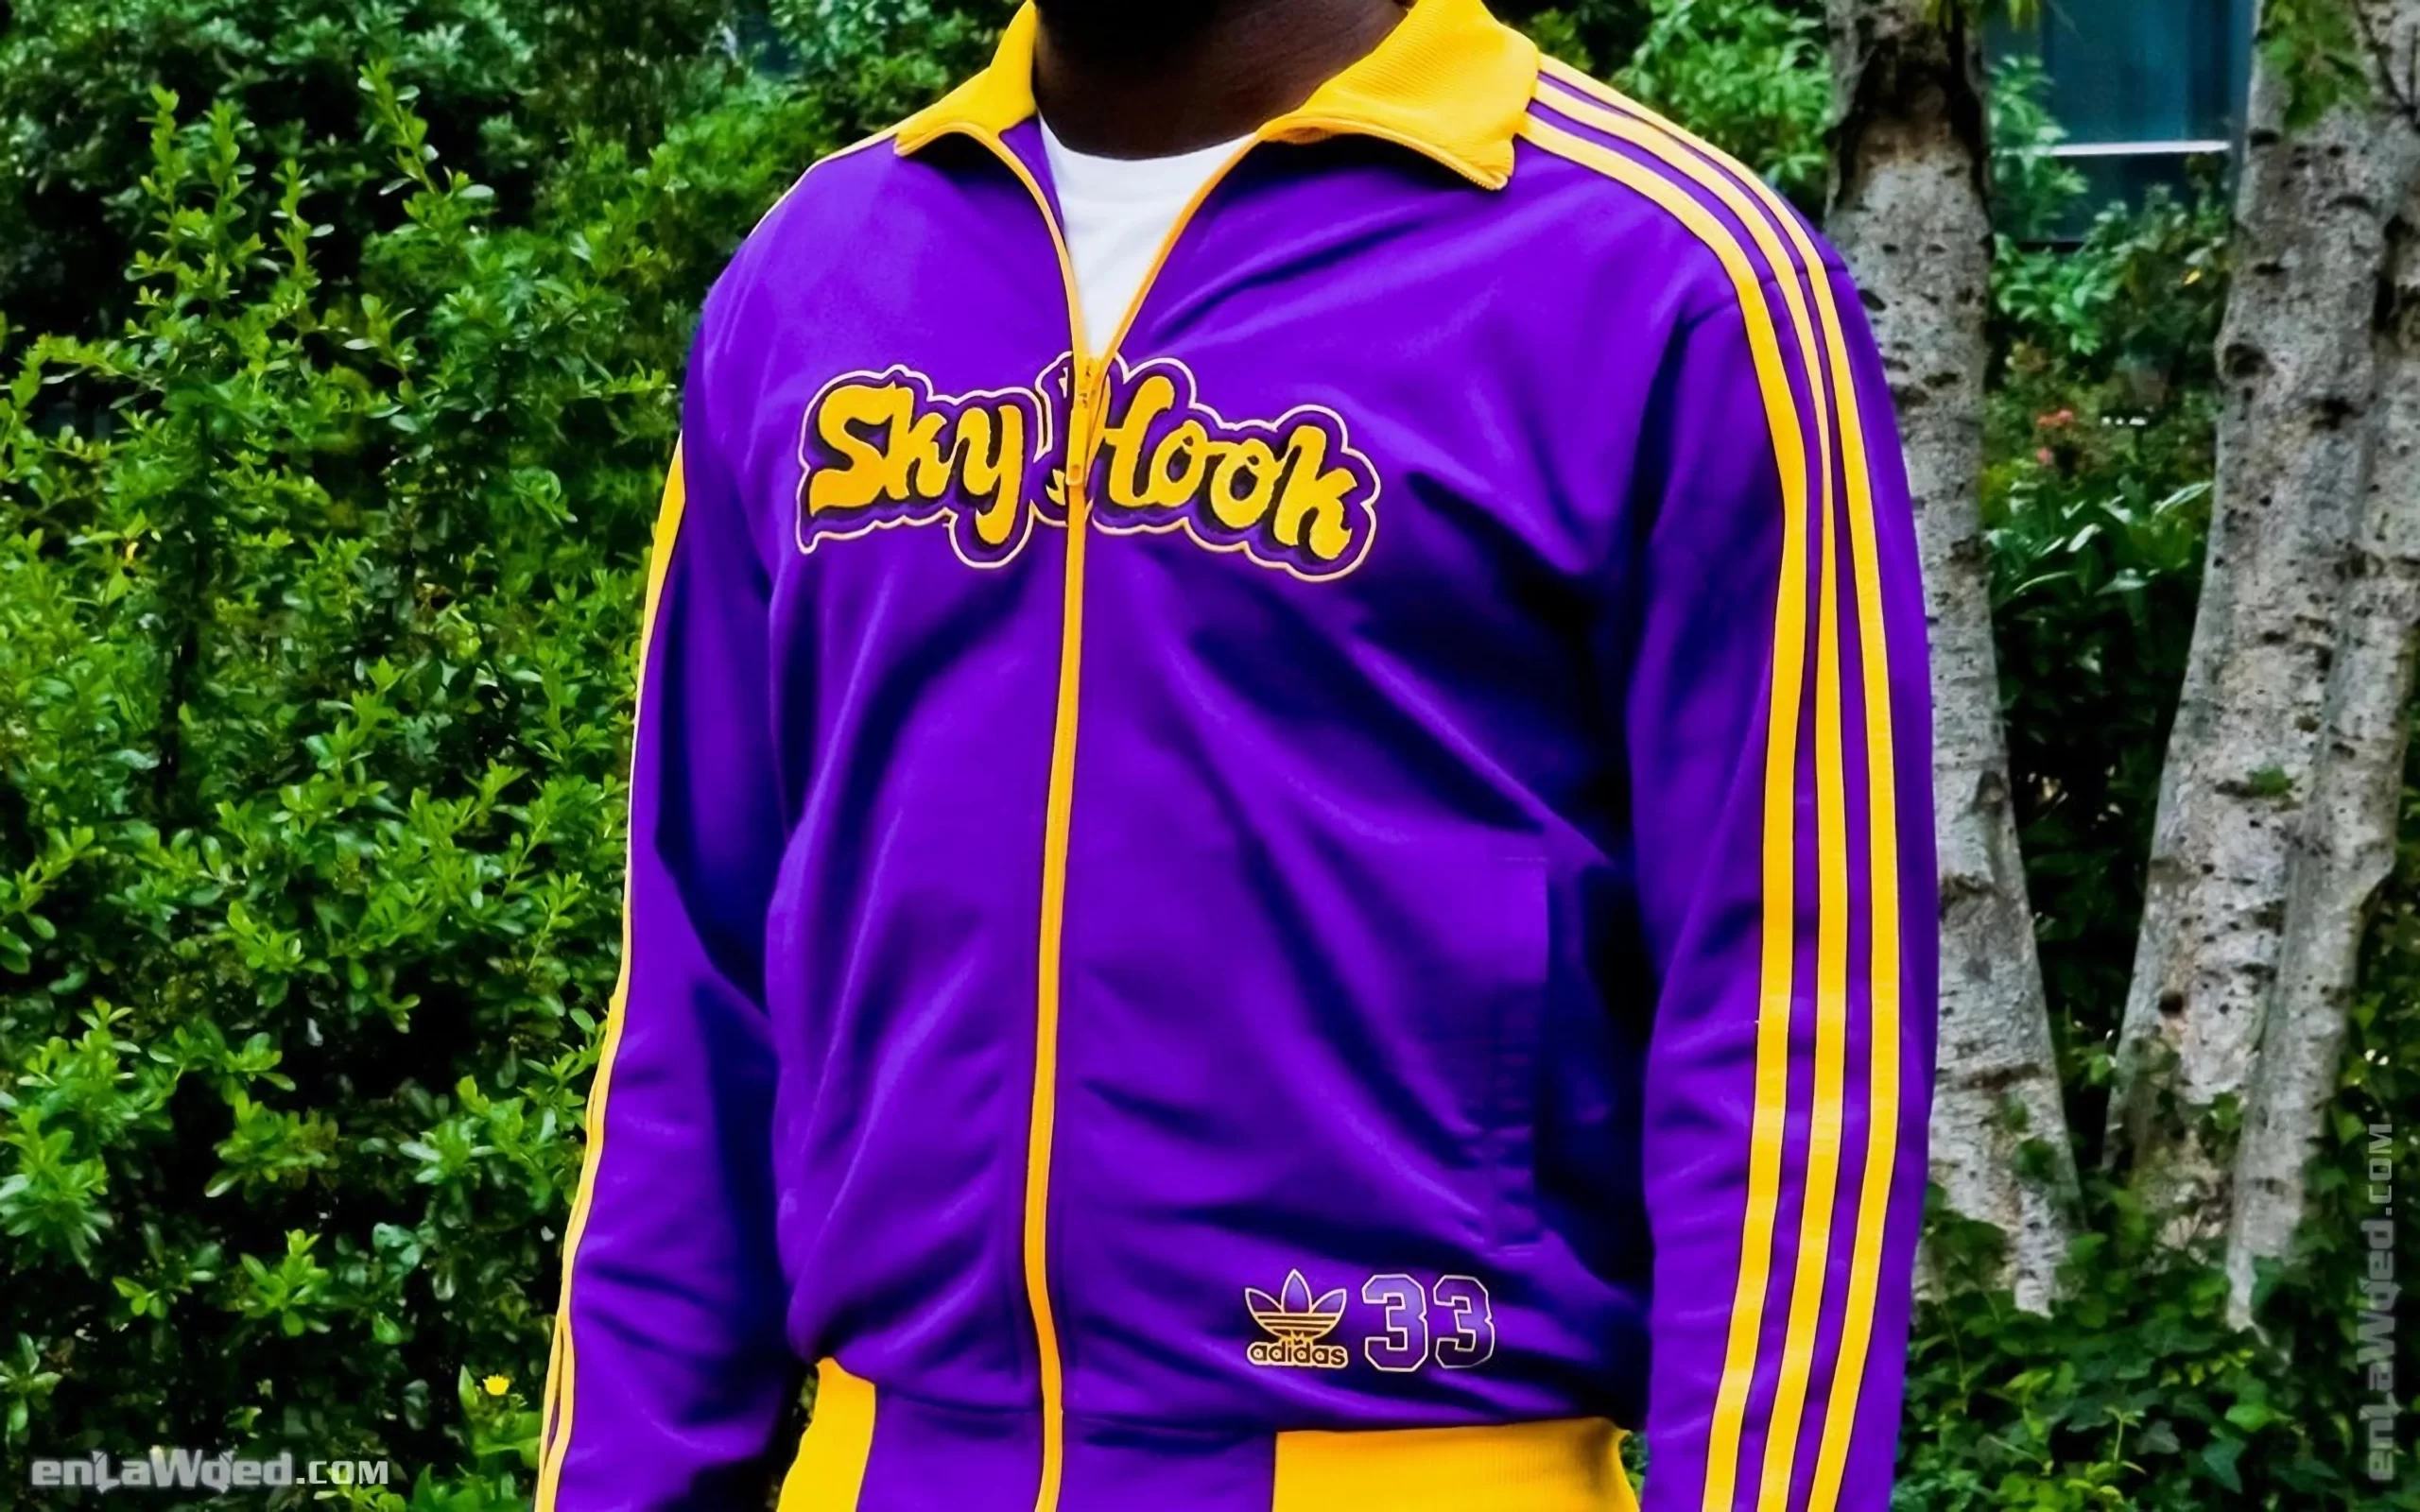 Men’s 2004 SkyHook Lakers #33 Track Top by Adidas: Rookie (EnLawded.com file #lmchk90353ip2y124433kg9st)